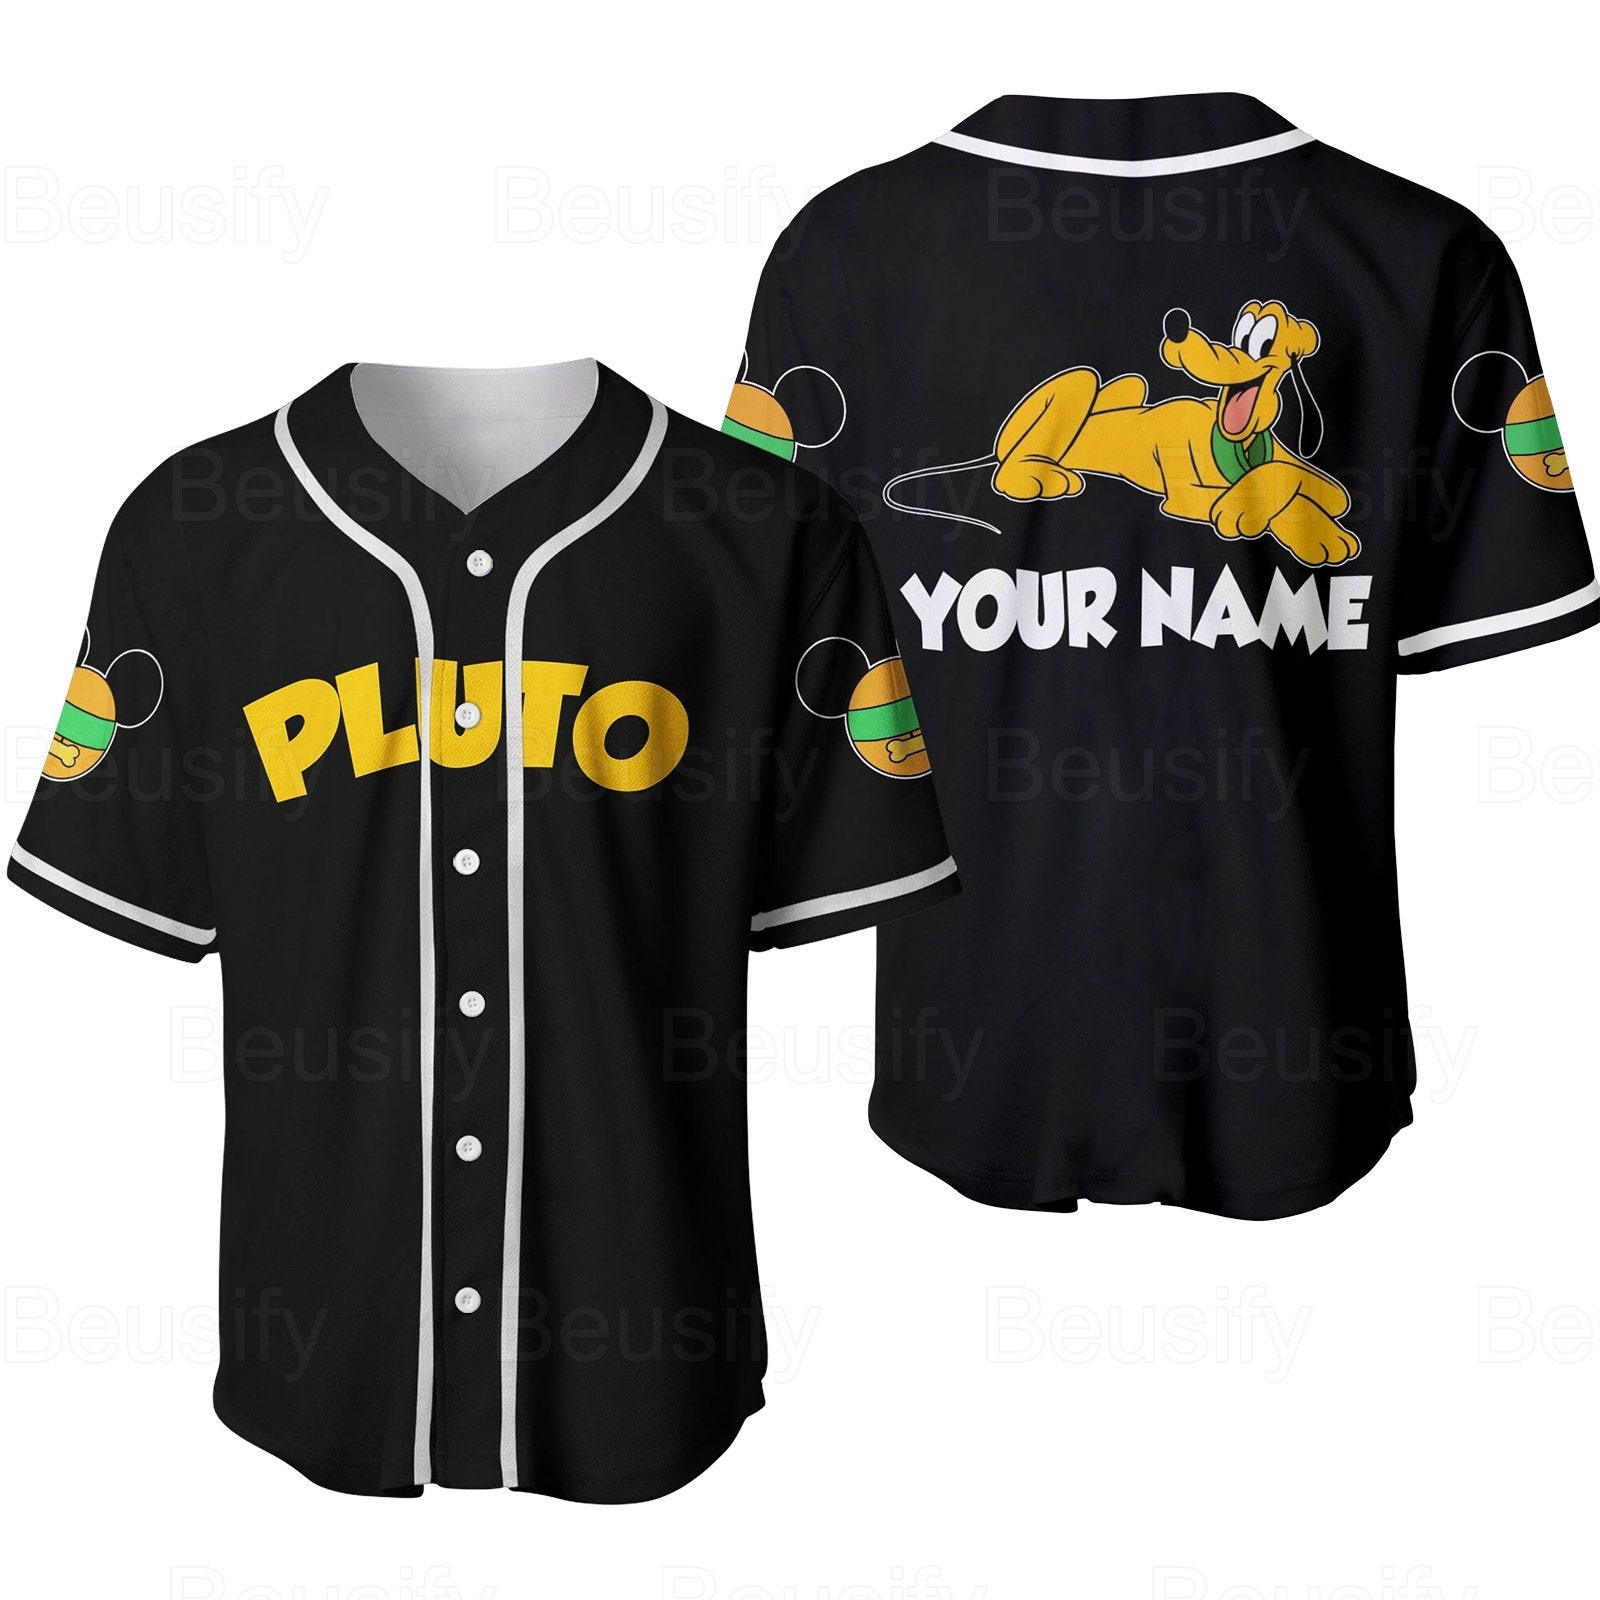 Personalized Pluto Dog Baseball Jersey, Pluto Jersey Shirt, Pluto Dog Baseball Shirt